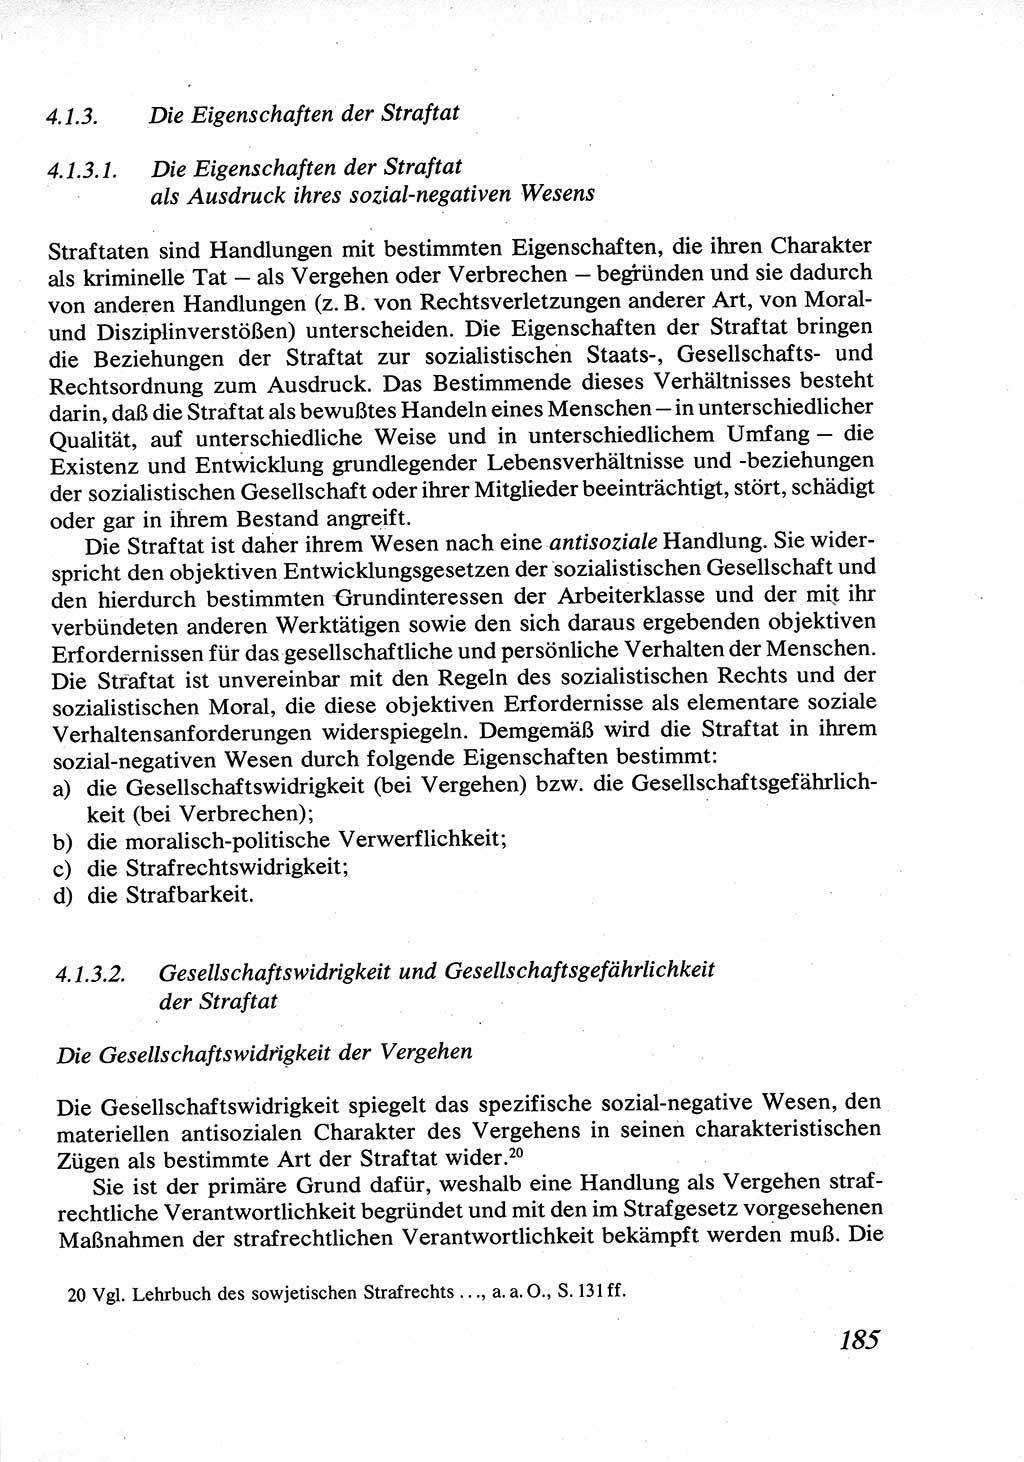 Strafrecht [Deutsche Demokratische Republik (DDR)], Allgemeiner Teil, Lehrbuch 1976, Seite 185 (Strafr. DDR AT Lb. 1976, S. 185)